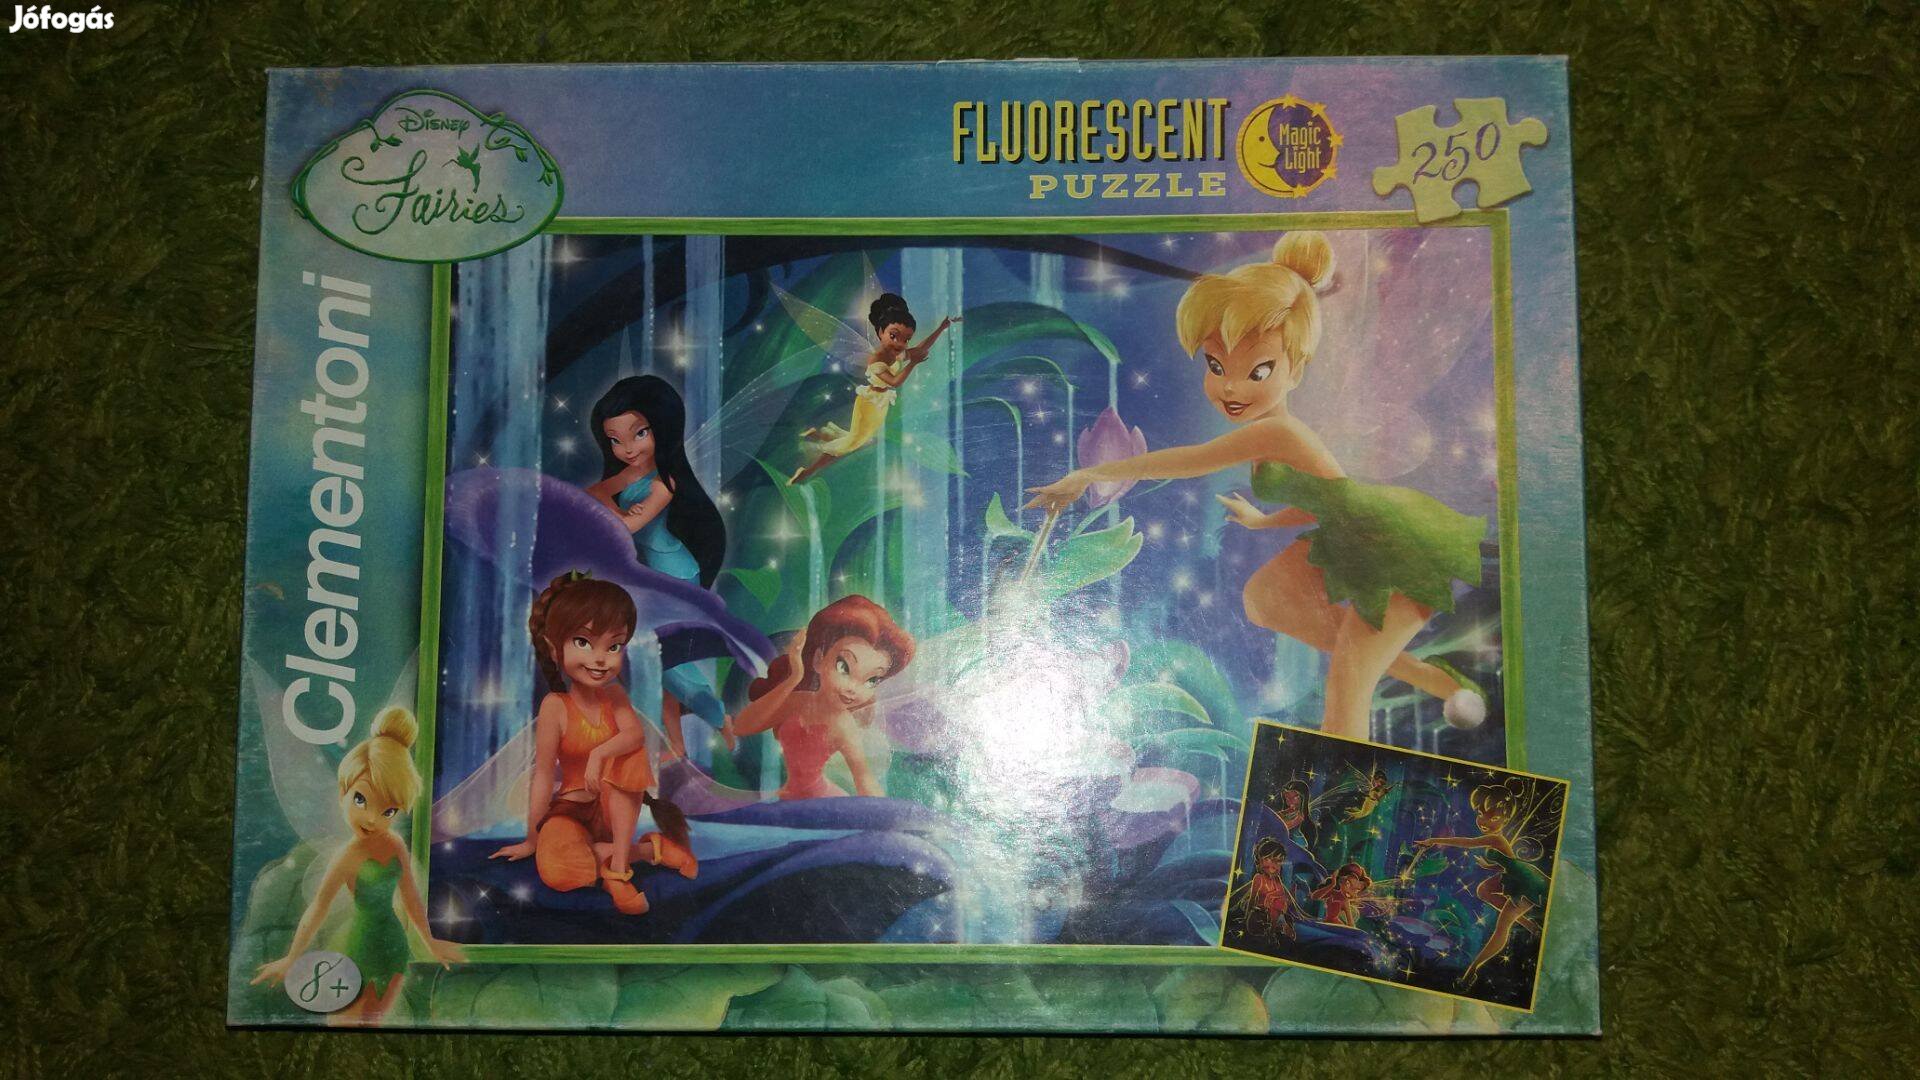 Tavaszi Leárazás! Disney fluorescent puzzle eladó!